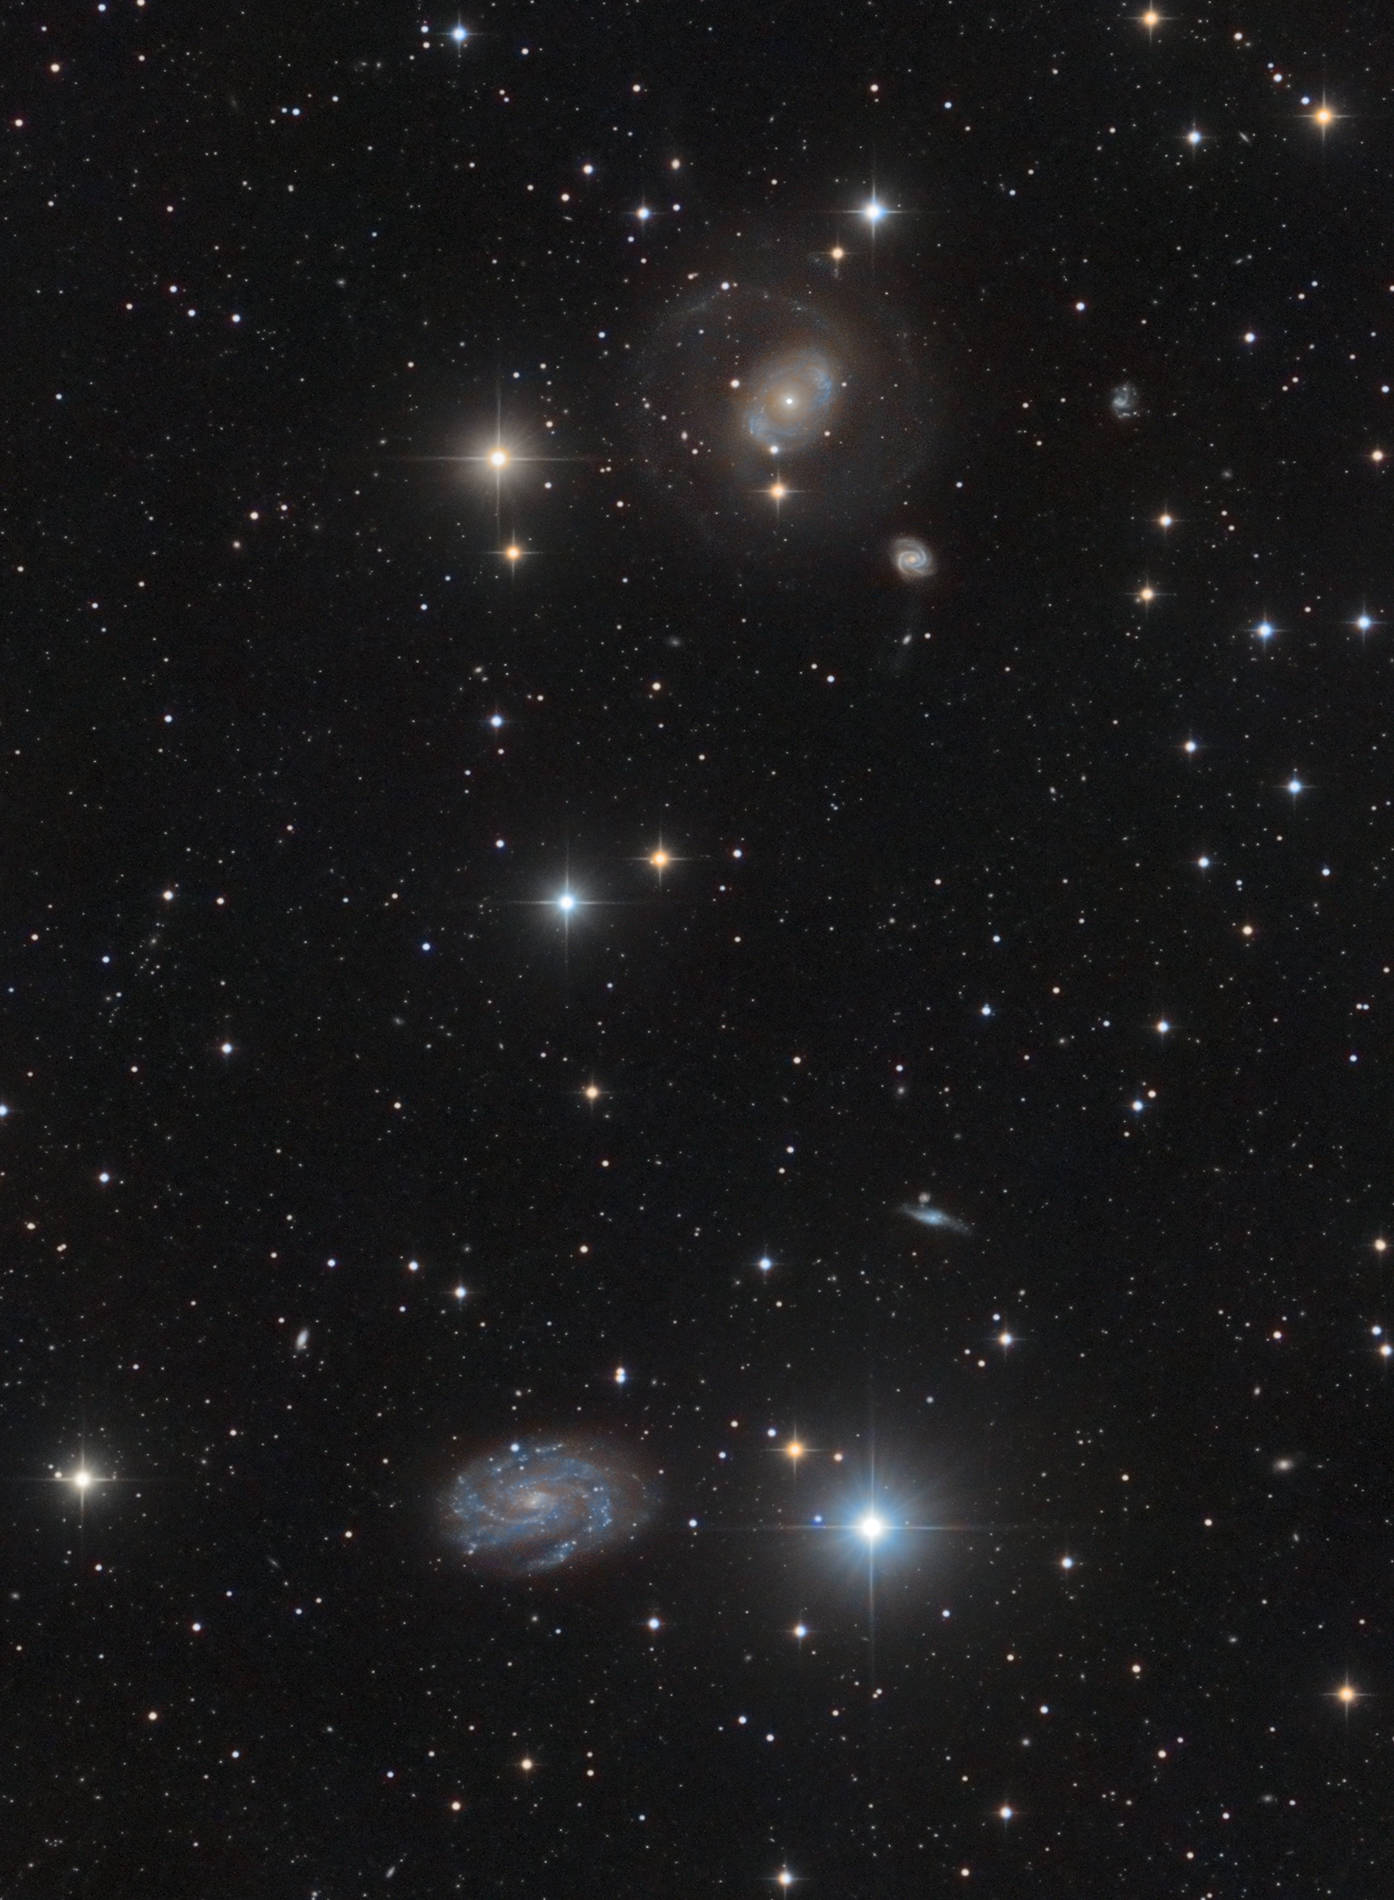 Eons of Silence (NCG4151 & NGC4145)